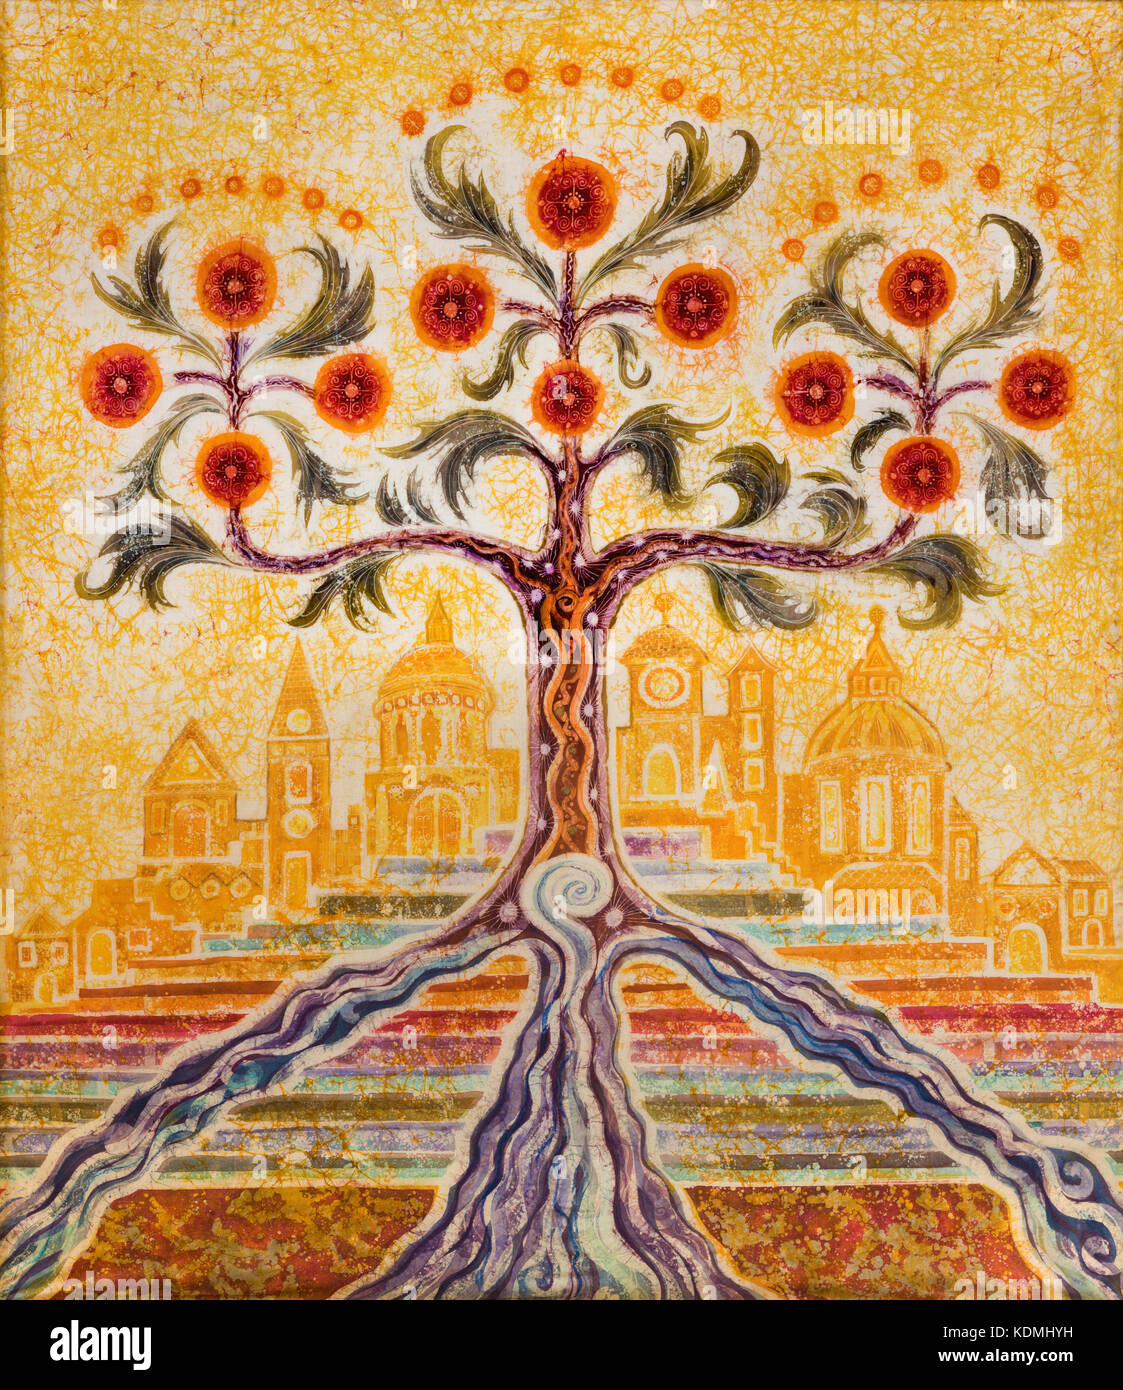 Paris, France - 18 septembre 2017 : la peinture symbolique de l'arbre de vie et ville sainte Jérusalem à l'église St botolph aldgate Banque D'Images